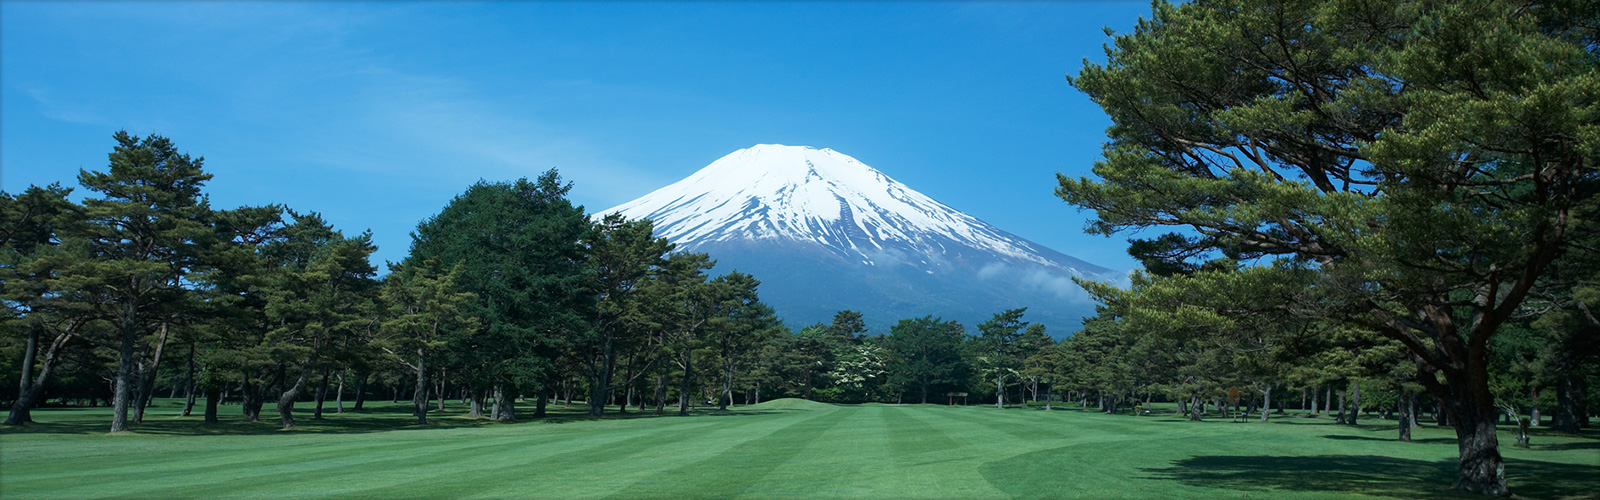 富士高爾夫球場